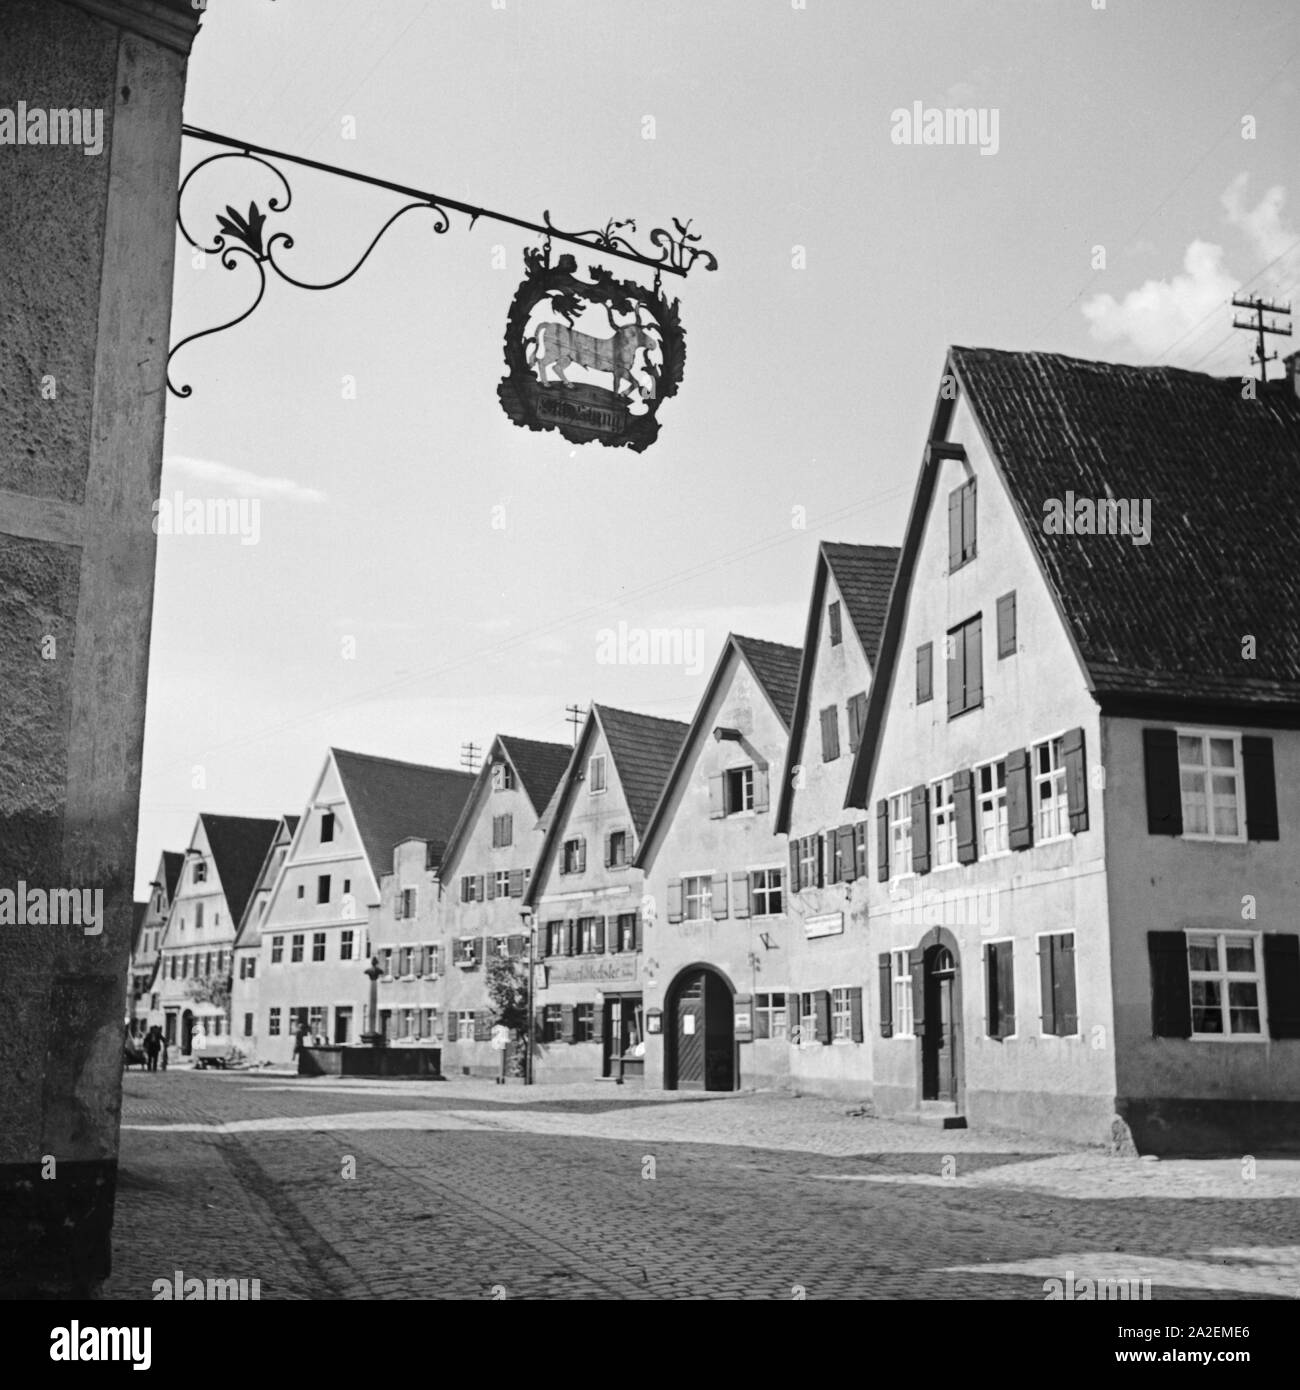 Geschäfte und Wohnhäuser in einer Straße in Dinkelsbühl, Deutschland 1930er Jahre. Shops and houses at a street in Dinkelsbuehl, Germany 1930s. Stock Photo